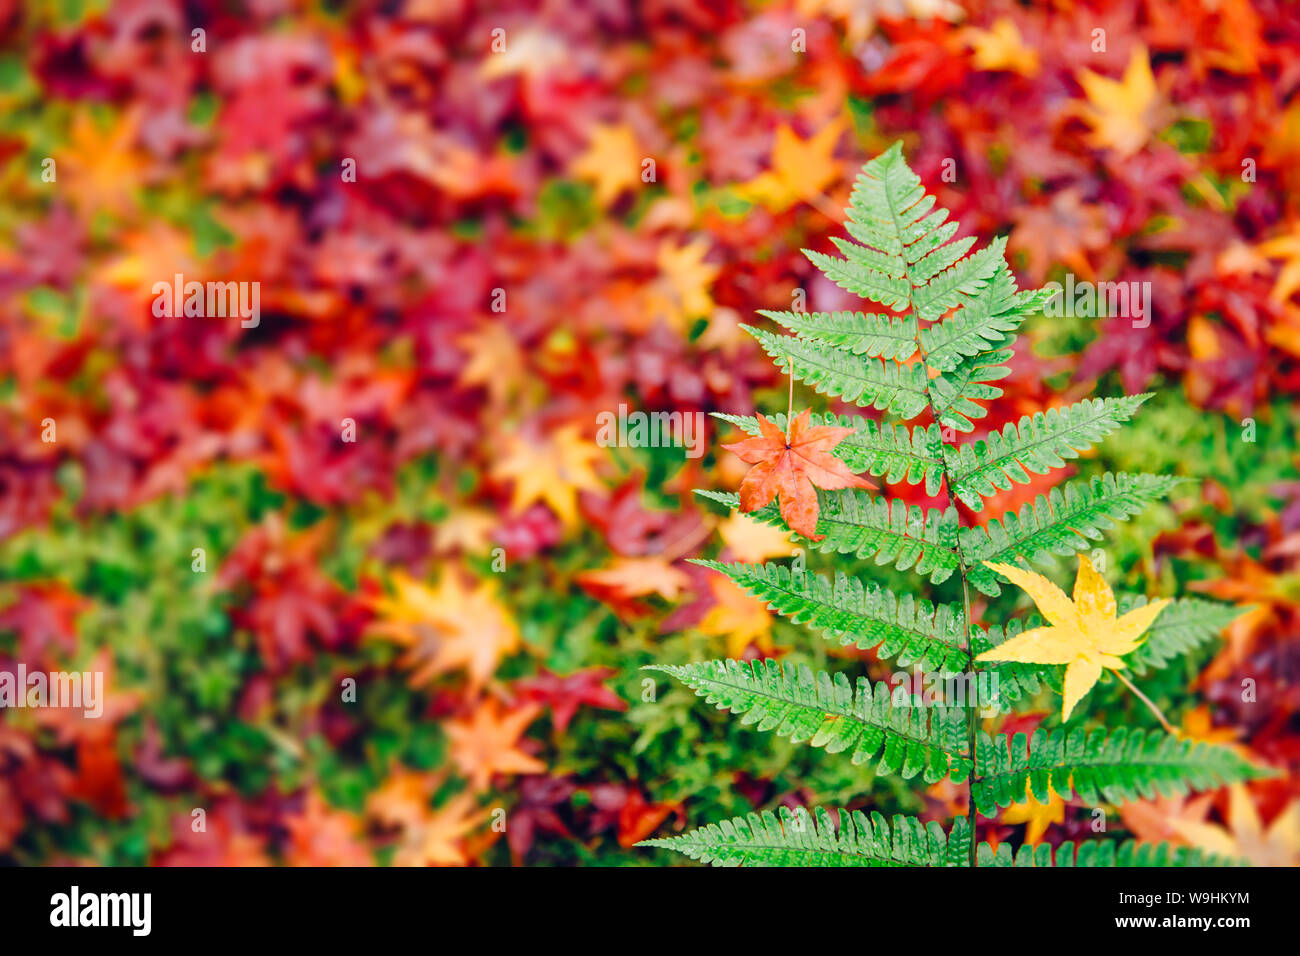 Grünen Farn im Herbst Jahreszeit mit Red maple fallen Decken auf dem Boden im Hintergrund in Japan Stockfoto